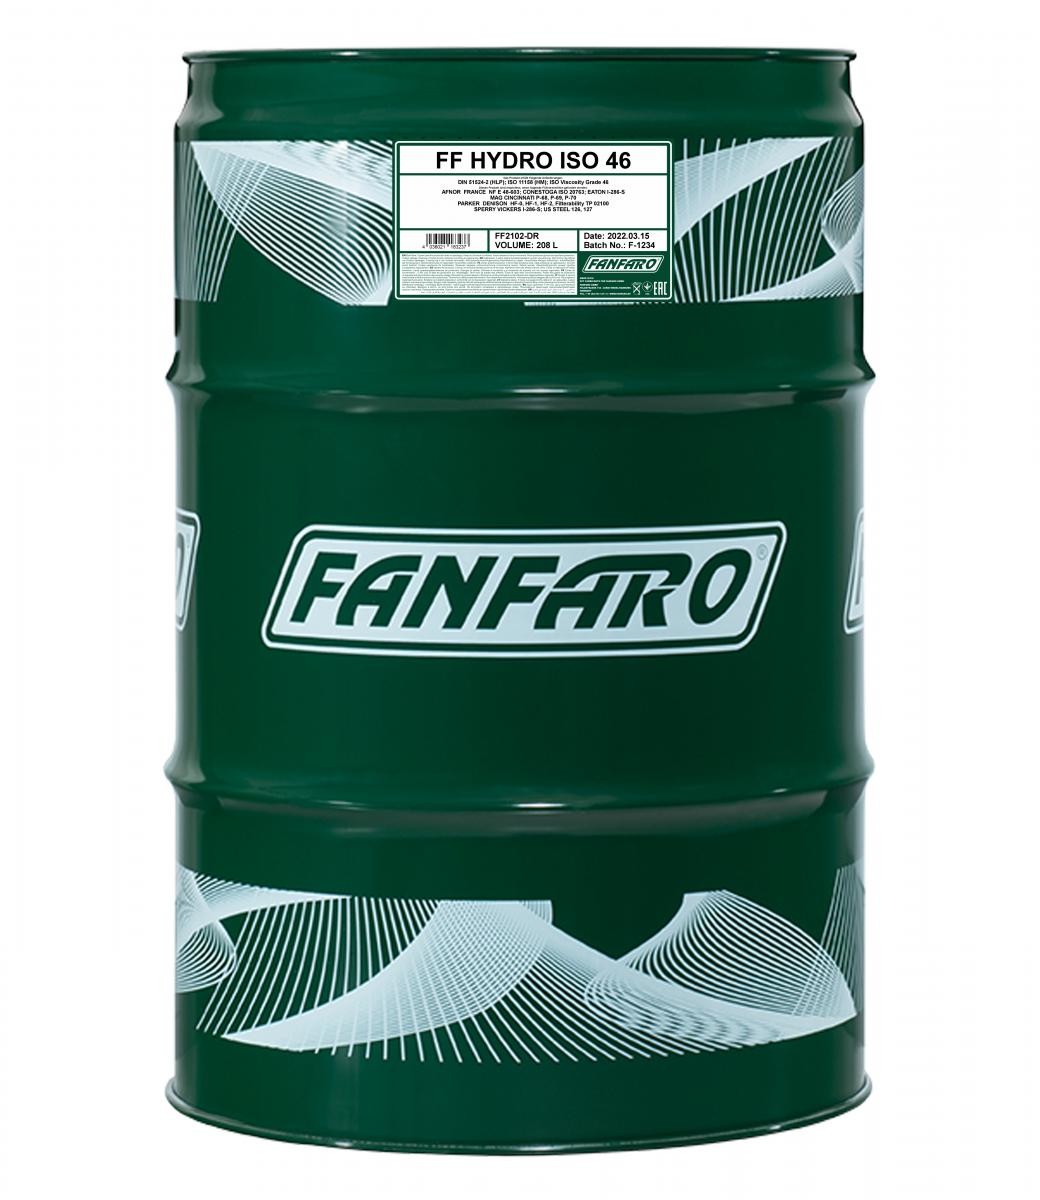 FF2102-DR FANFARO Hydrauliköl billiger online kaufen